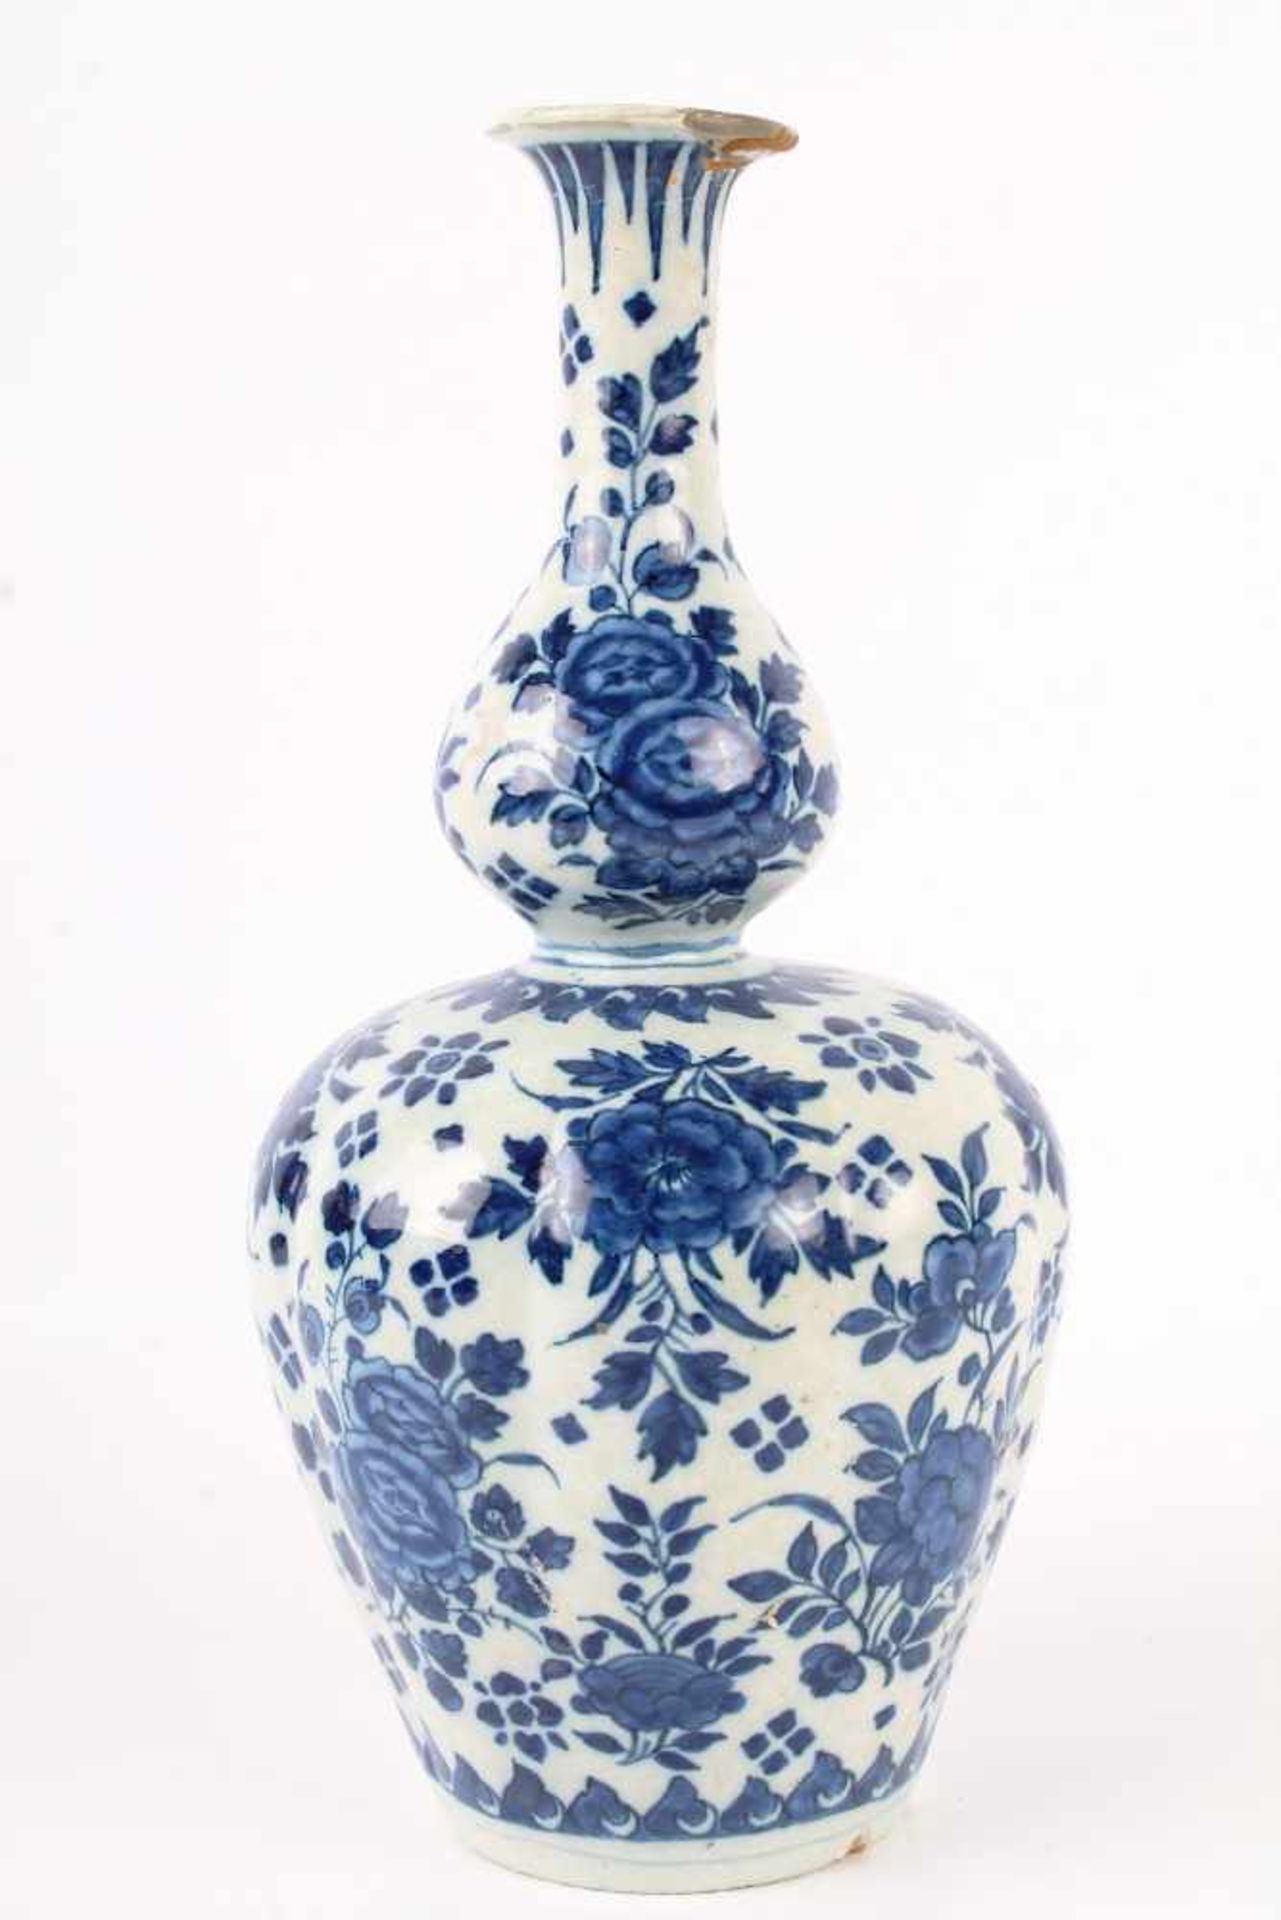 Teller und Vase, Delft 18. Jahrhundert, plate and vase 18th century,Keramik, Niederlande 18. - Bild 2 aus 4